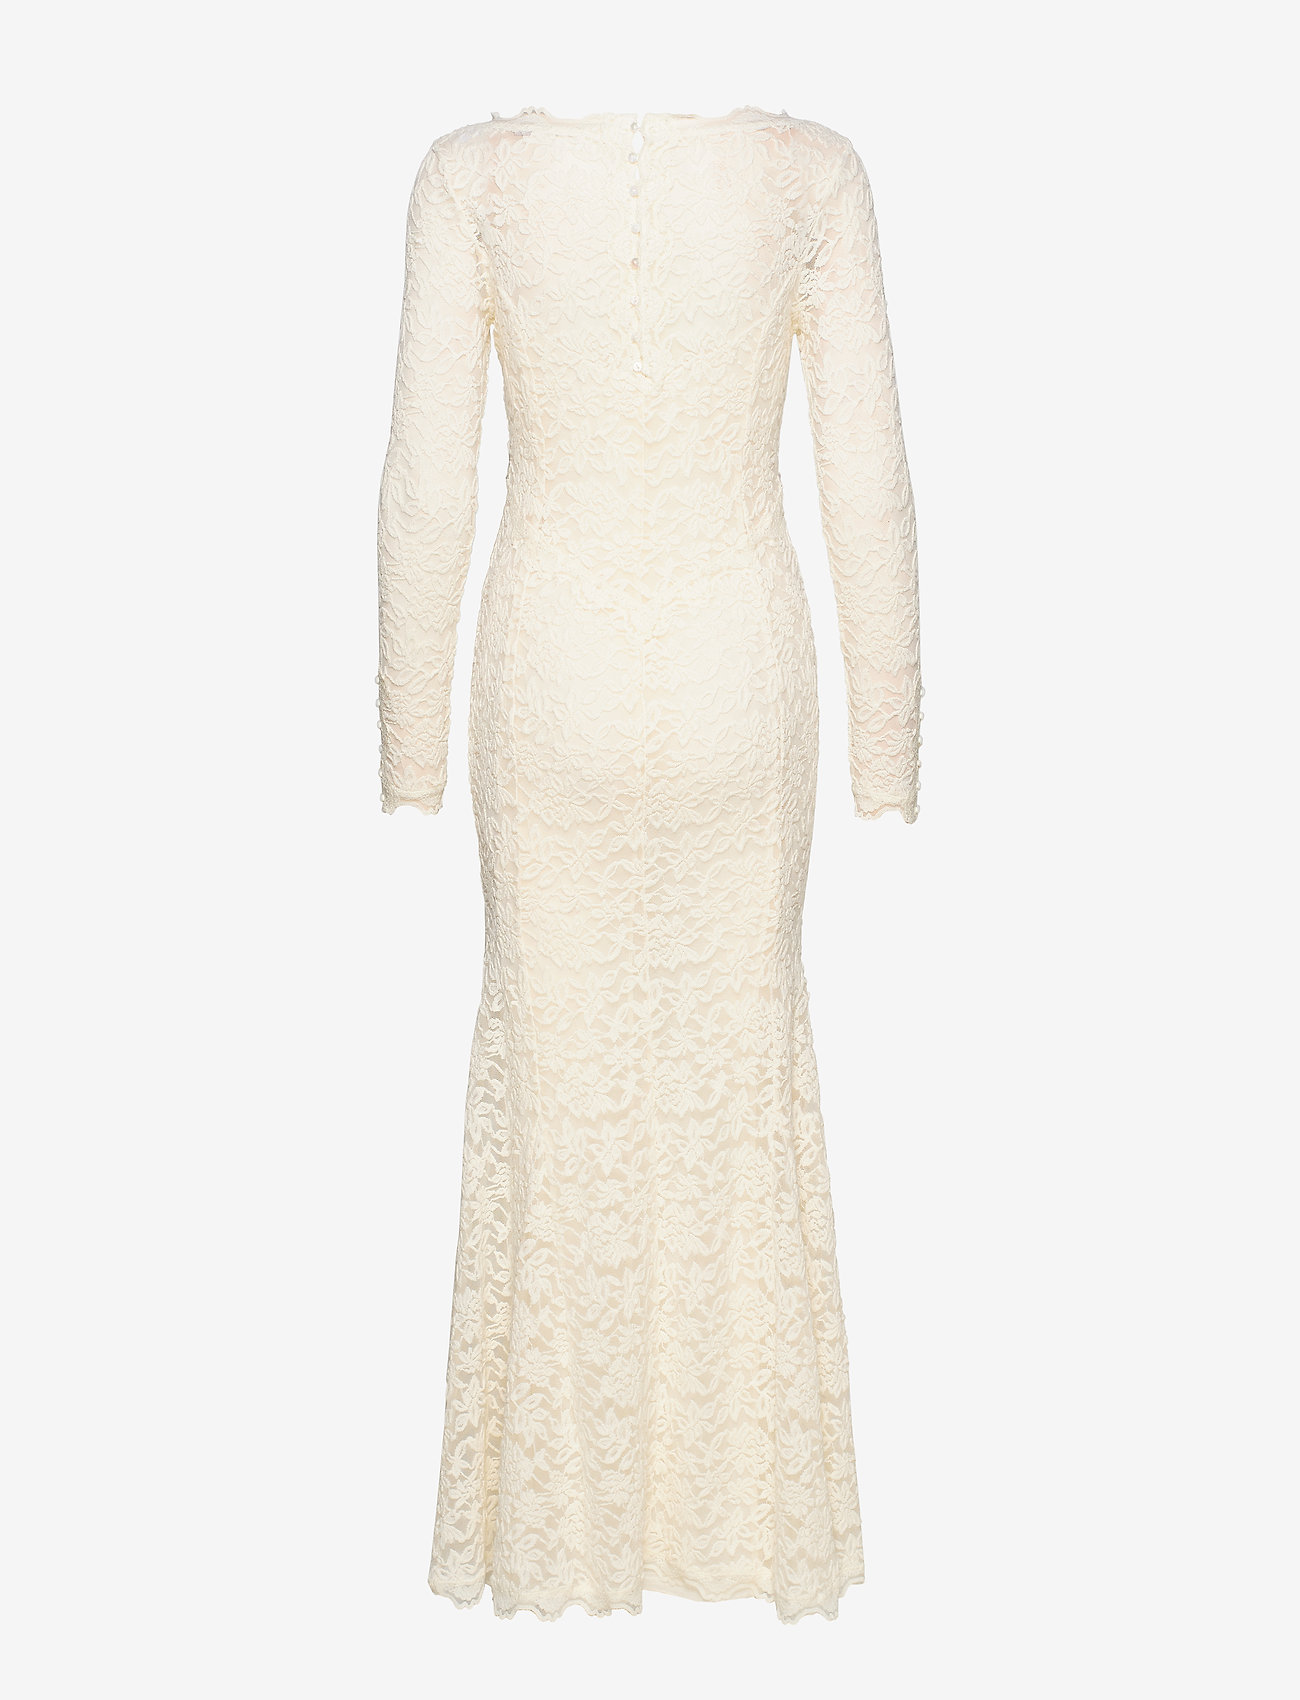 Rosemunde - Dress - odzież imprezowa w cenach outletowych - ivory - 1